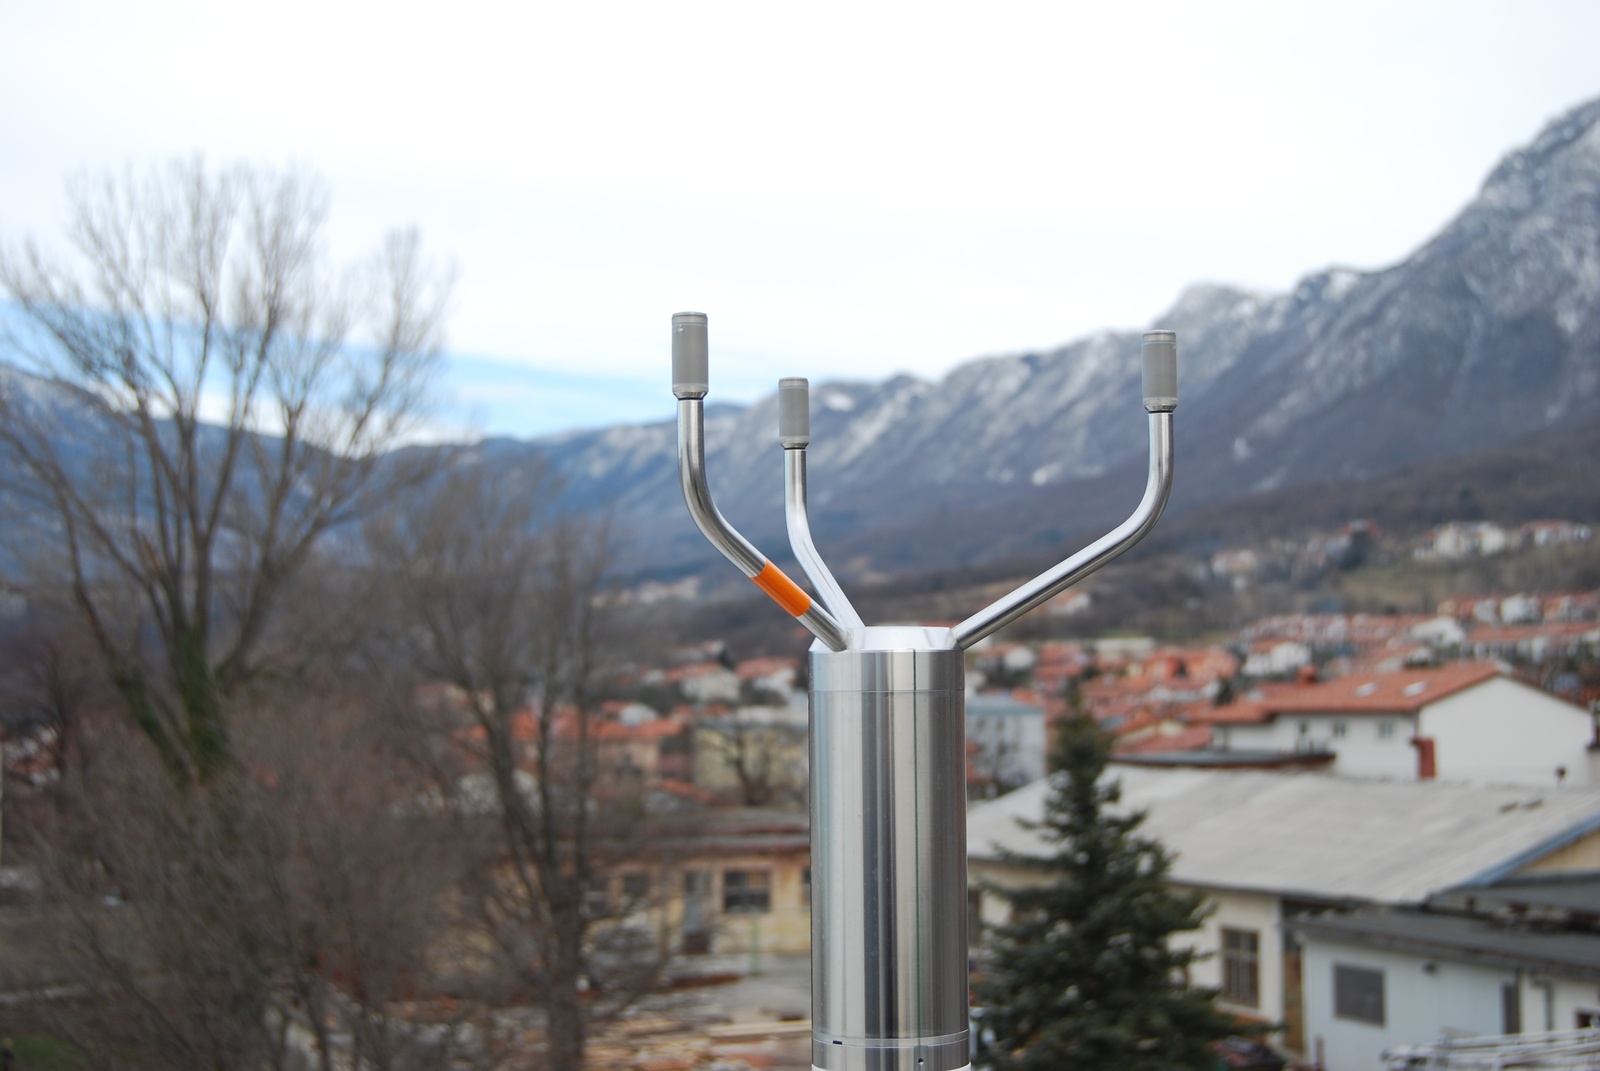 Ultrasonični anemometer, ki stoji na strehi prostorov Univerze v Novi Gorici v Ajdovščini, omogoča zajem podatkov o hitrosti in smeri vetra do 4-krat na sekundo.